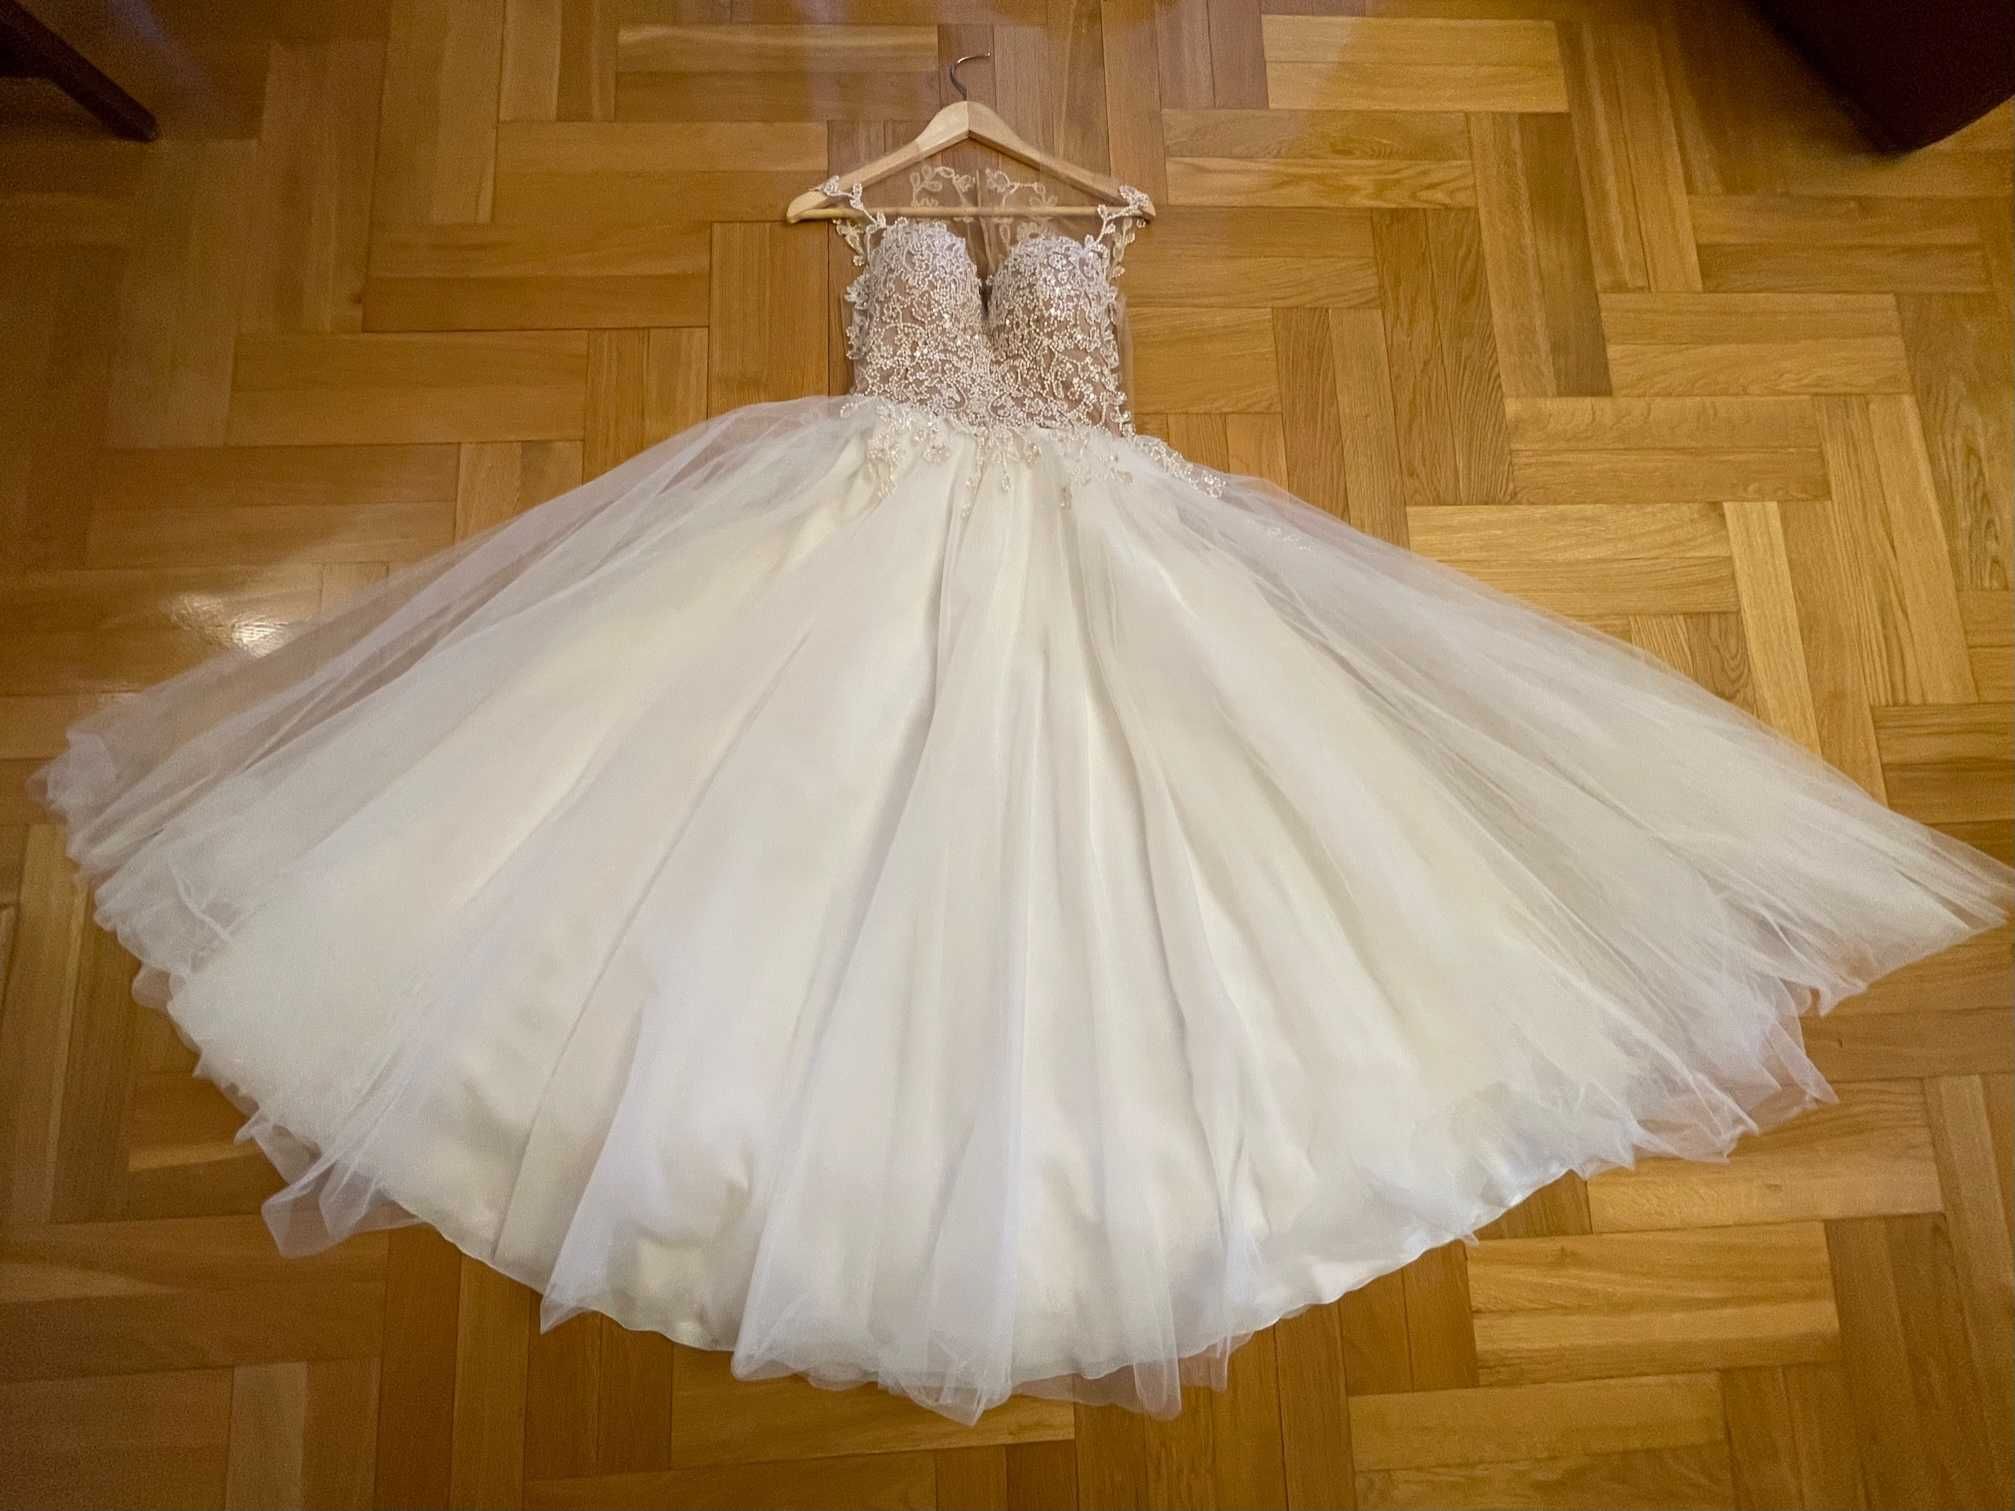 Piękna suknia ślubna - projekt Catarina Kordas - okazja!